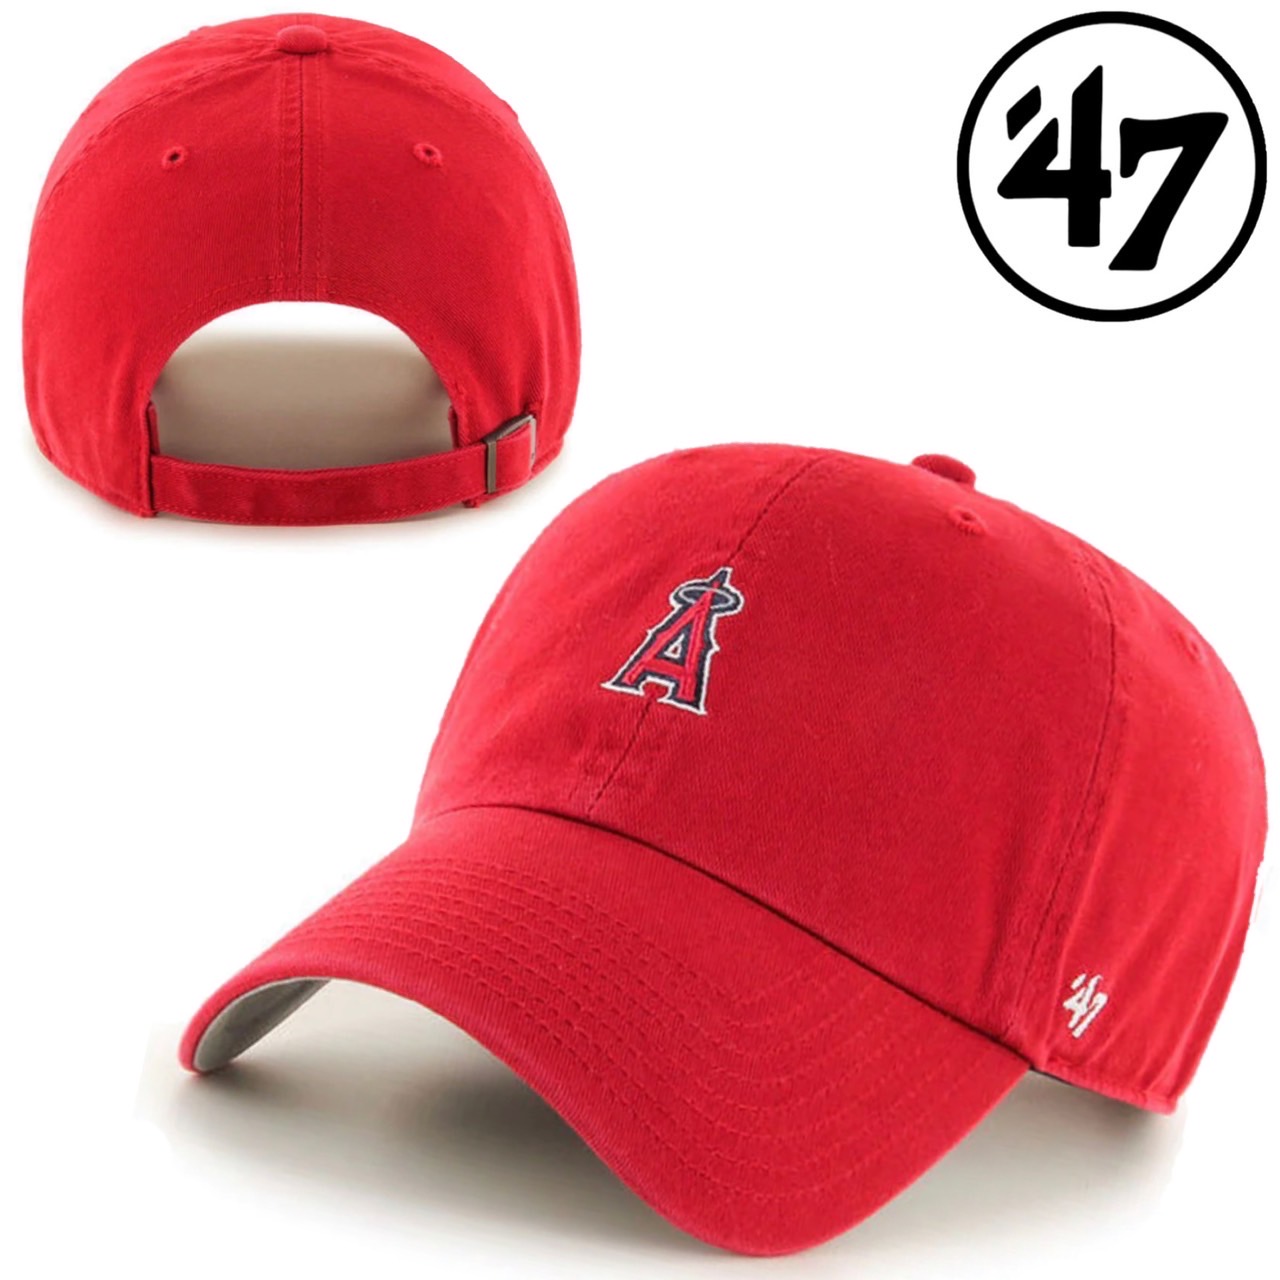 47 フォーティーセブン ブランド キャップ 帽子ミニロゴ LA ベースランナー MLB クリーンナップ 野球 ベースボールキャップ 柔らか  47BRAND BASERUNNER CLEAN UP